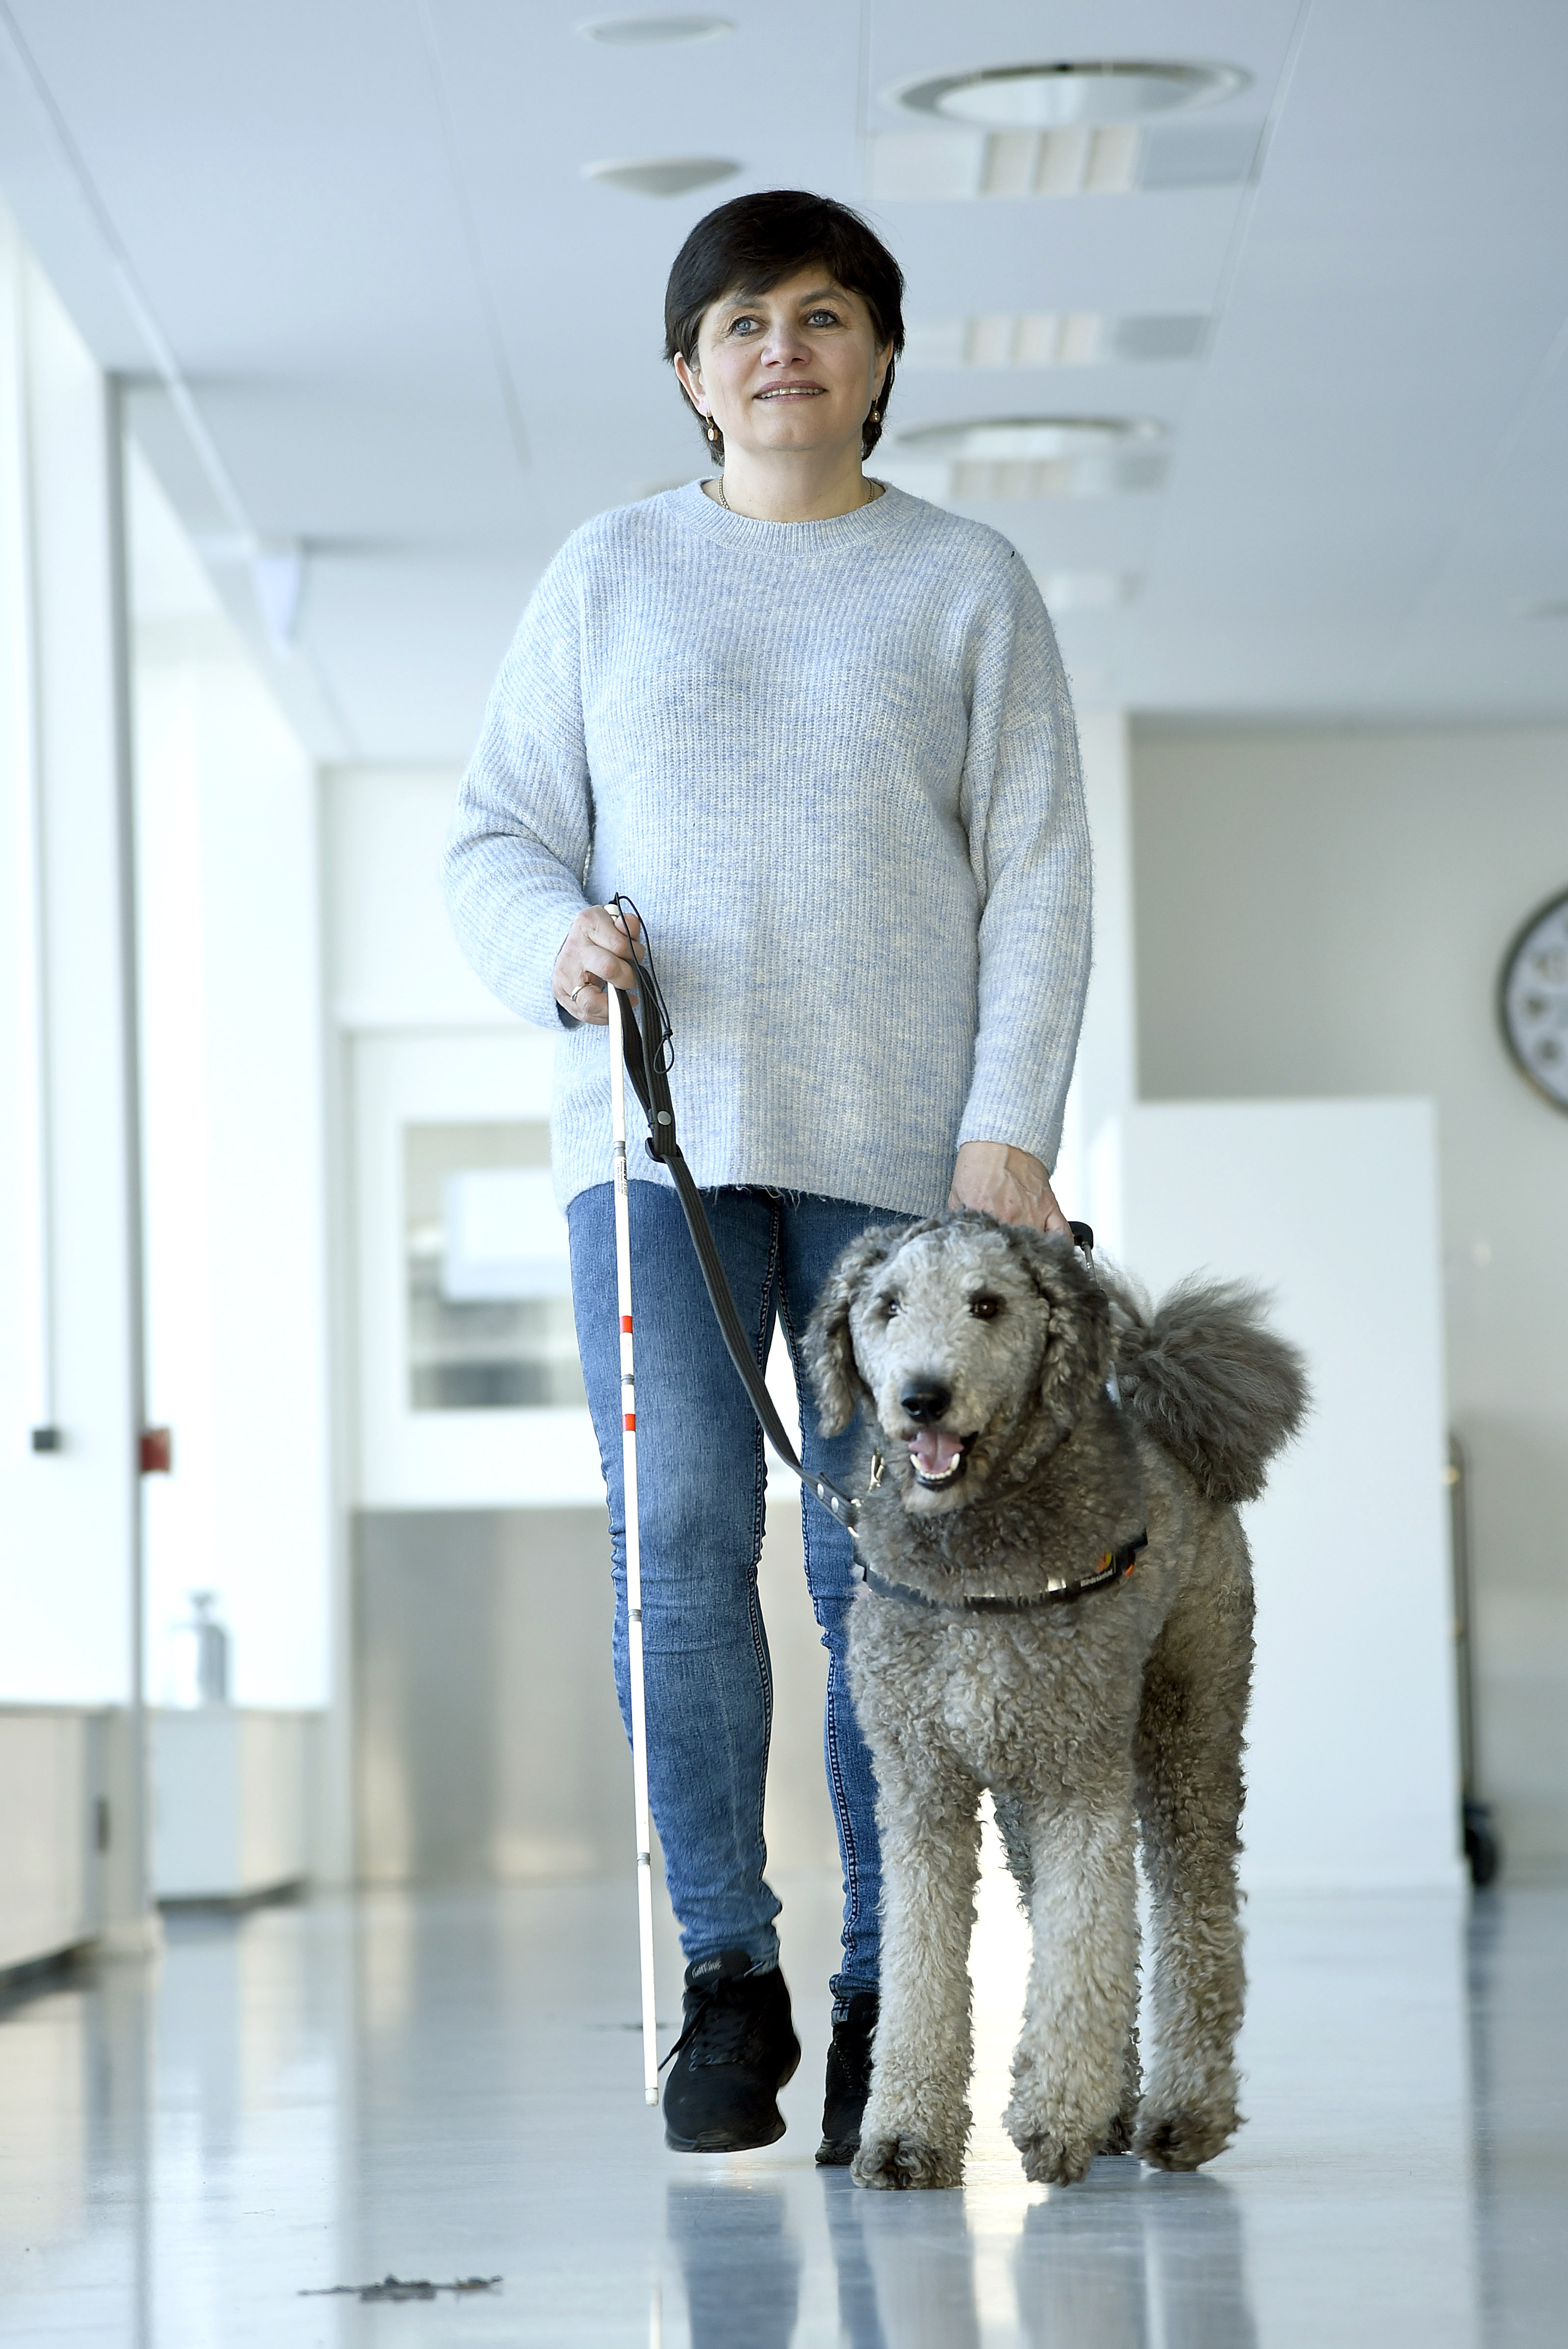 Førerhunde trænes i modstå | Dansk Blindesamfund